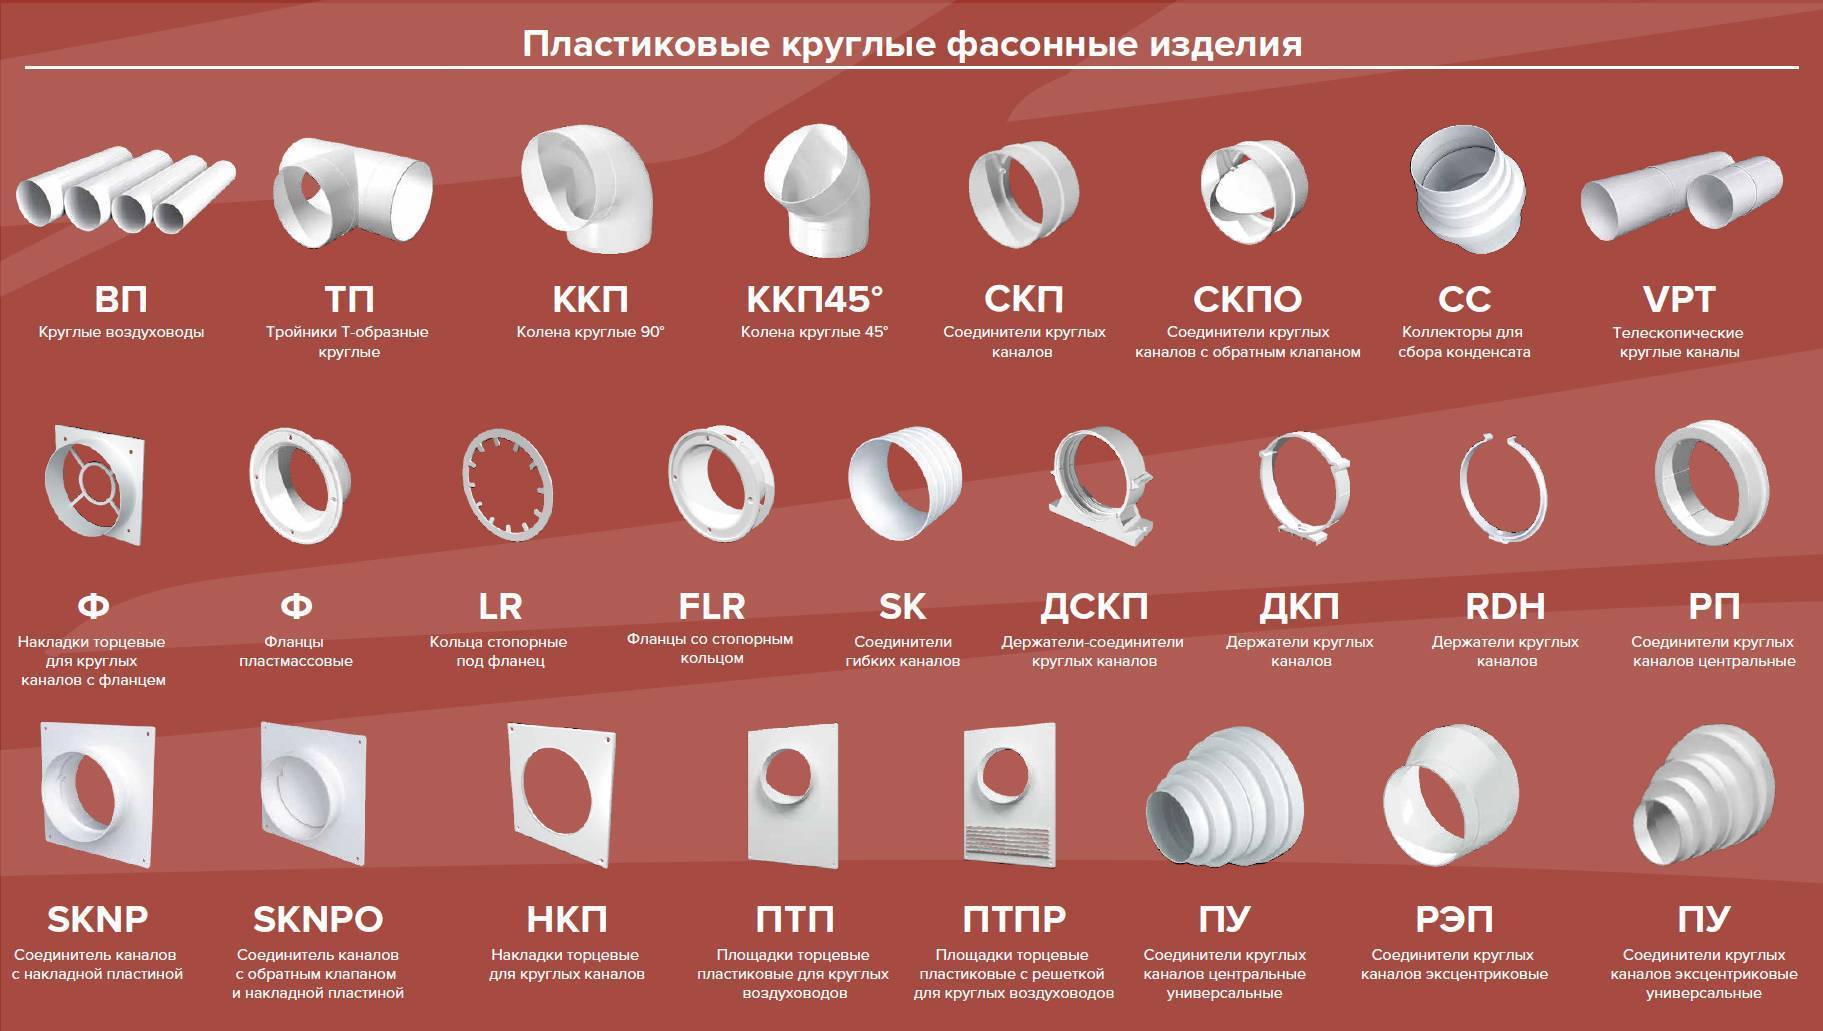 Вентиляционные трубы пластиковые для вытяжки: размеры, особенности монтажа :: syl.ru